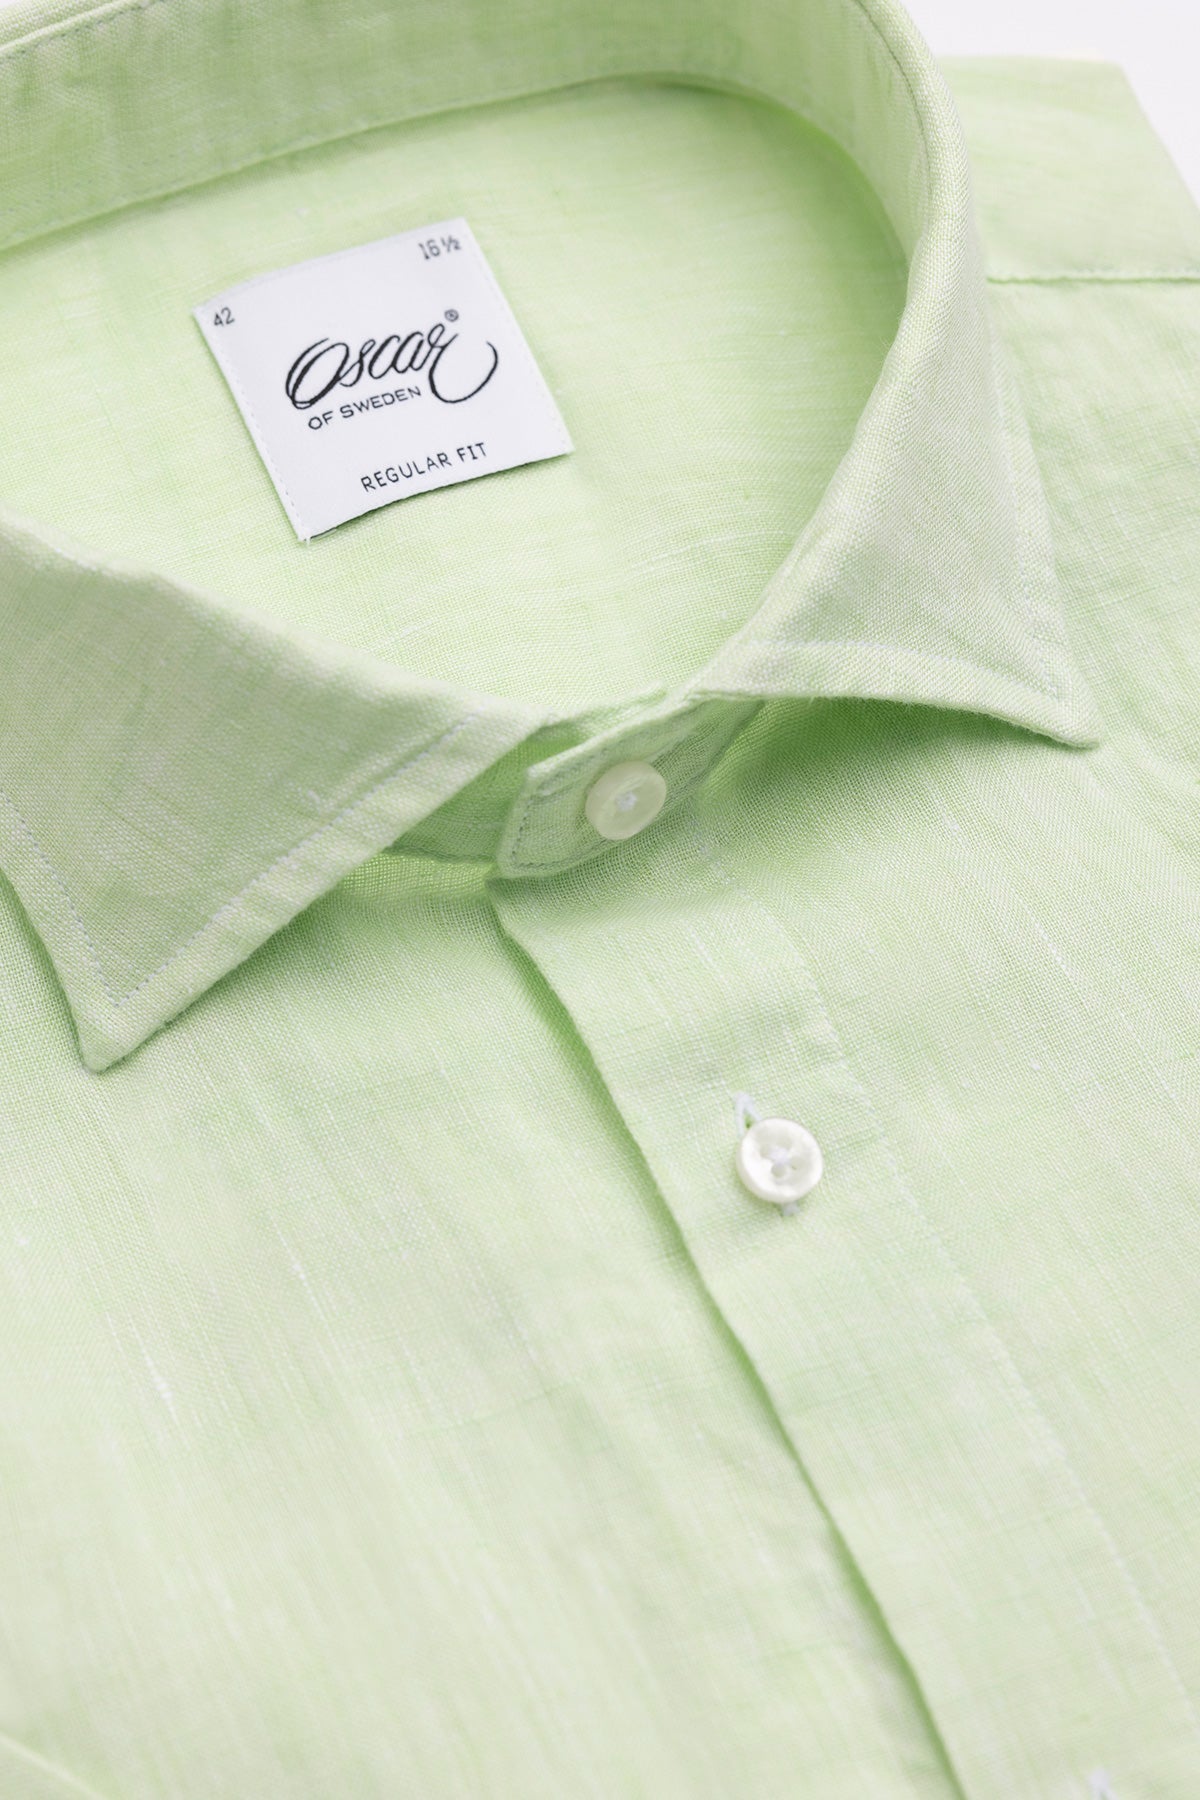 Light green short sleeve regular fit linen shirt